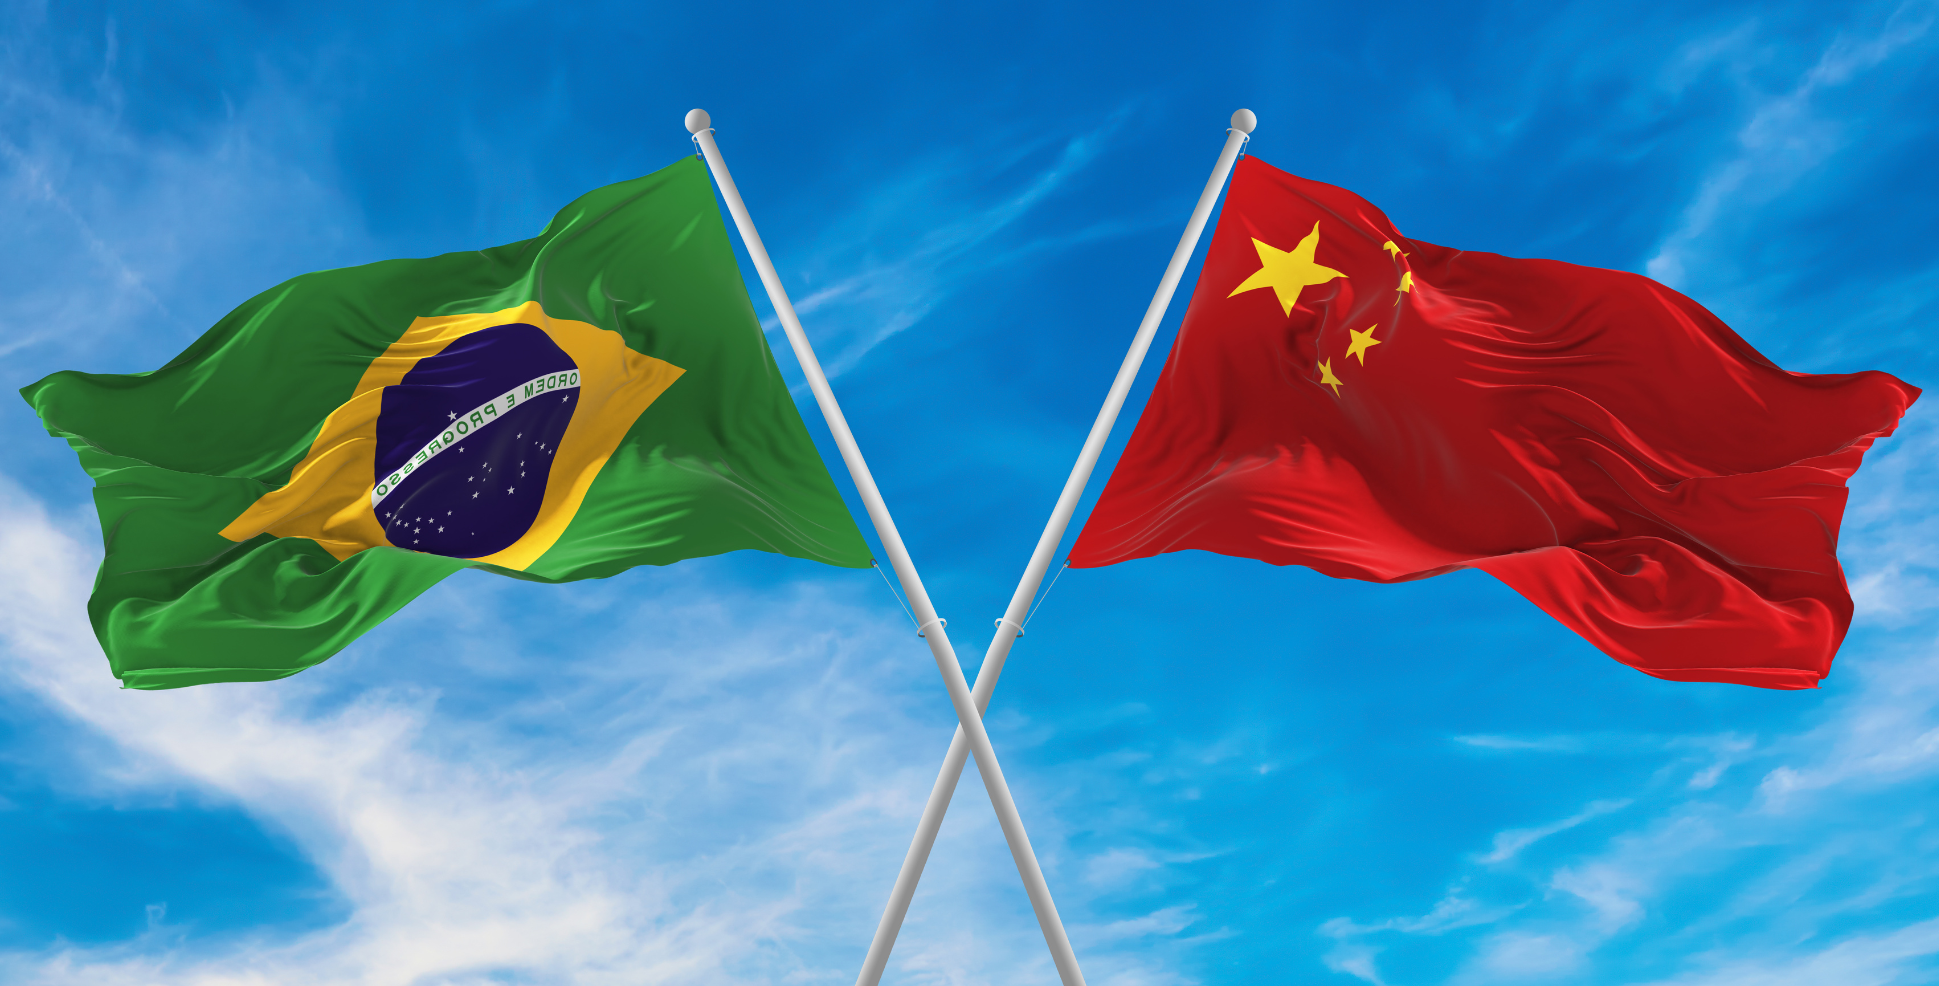 Comitiva do Mapa leva diversidade do agro brasileiro à China — Ministério  da Agricultura e Pecuária